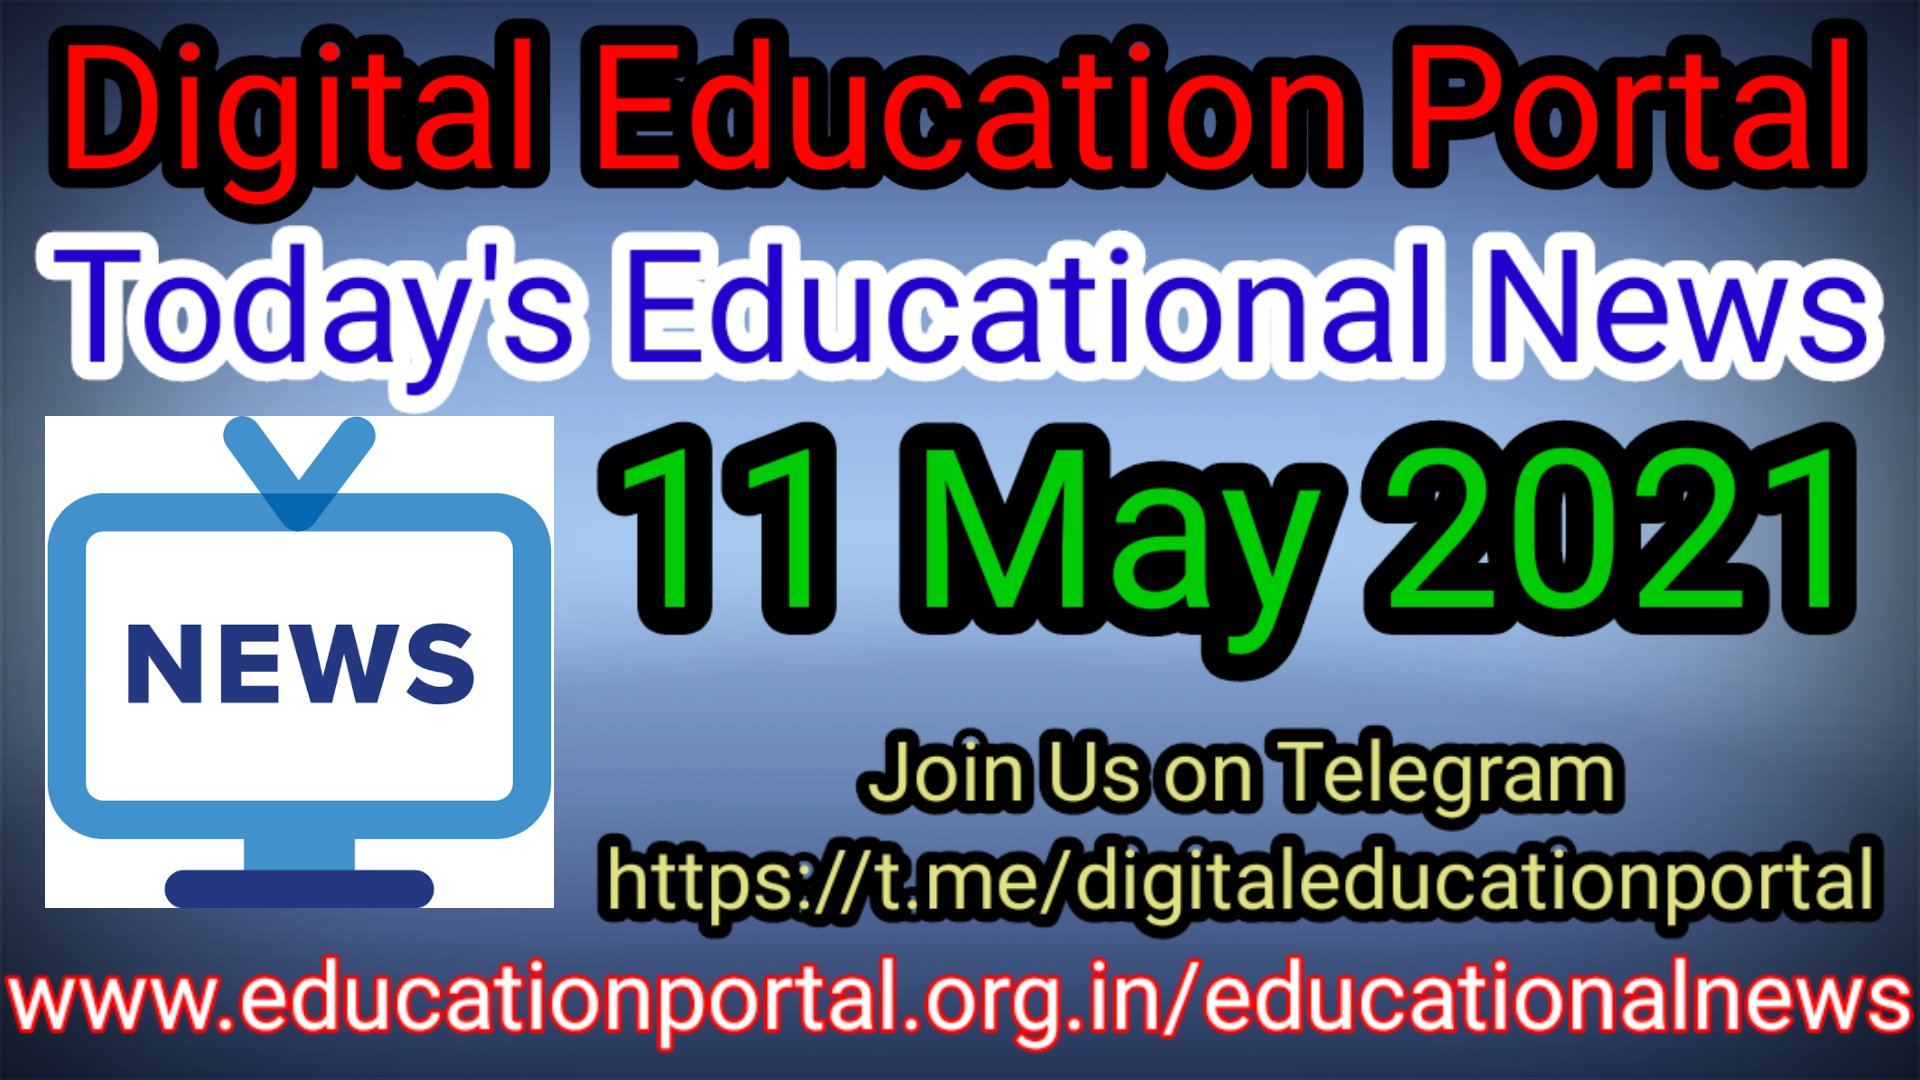 Today's Latest Educational News May 2021 आज की ताजा शैक्षणिक खबरें डिजिटल एजुकेशन पोर्टल